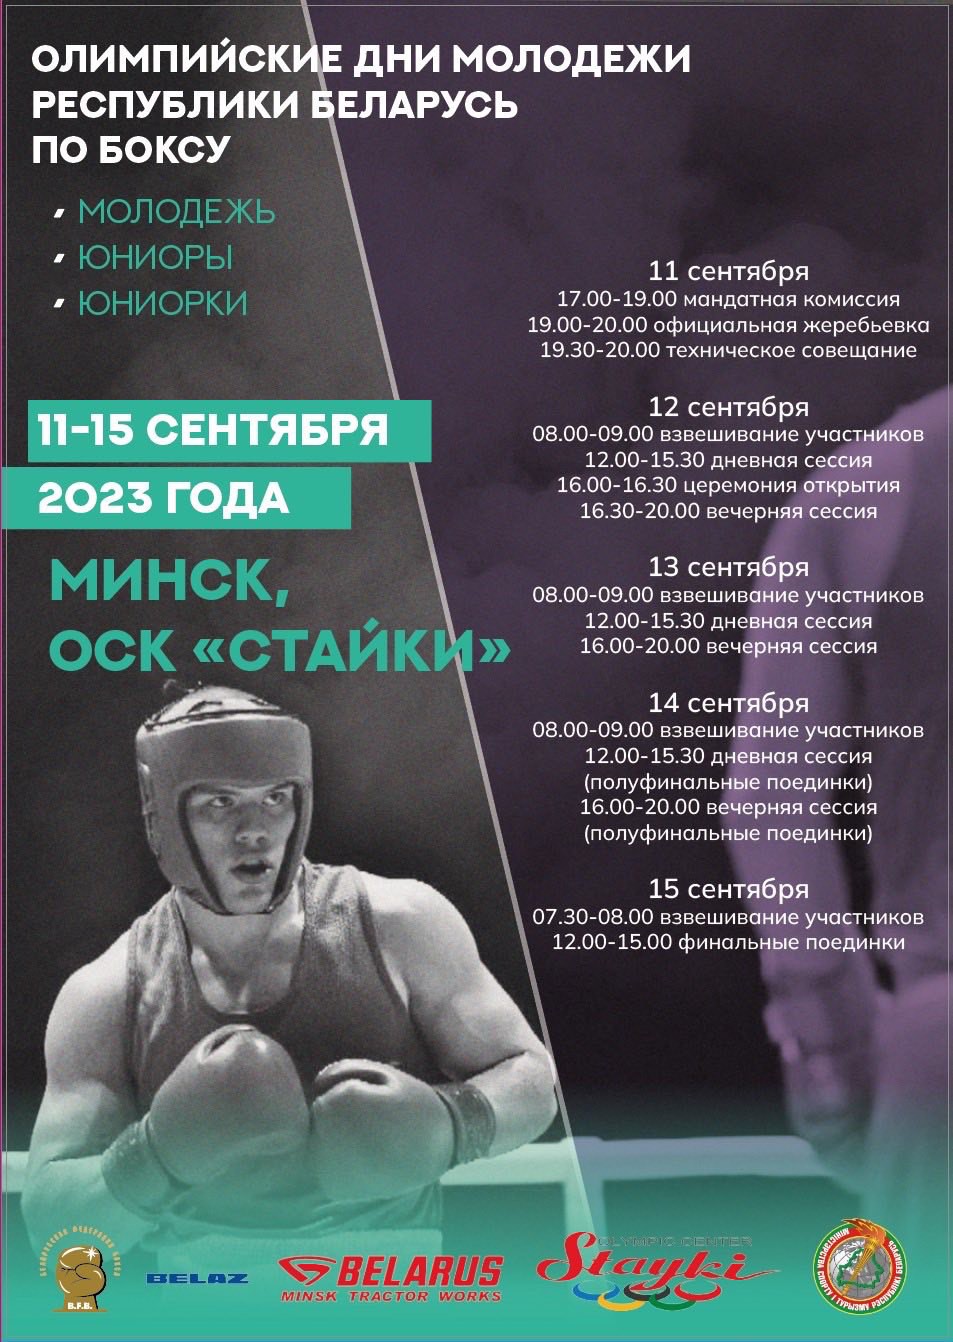 Олимпийские дни молодежи Республики Беларусь - 2023